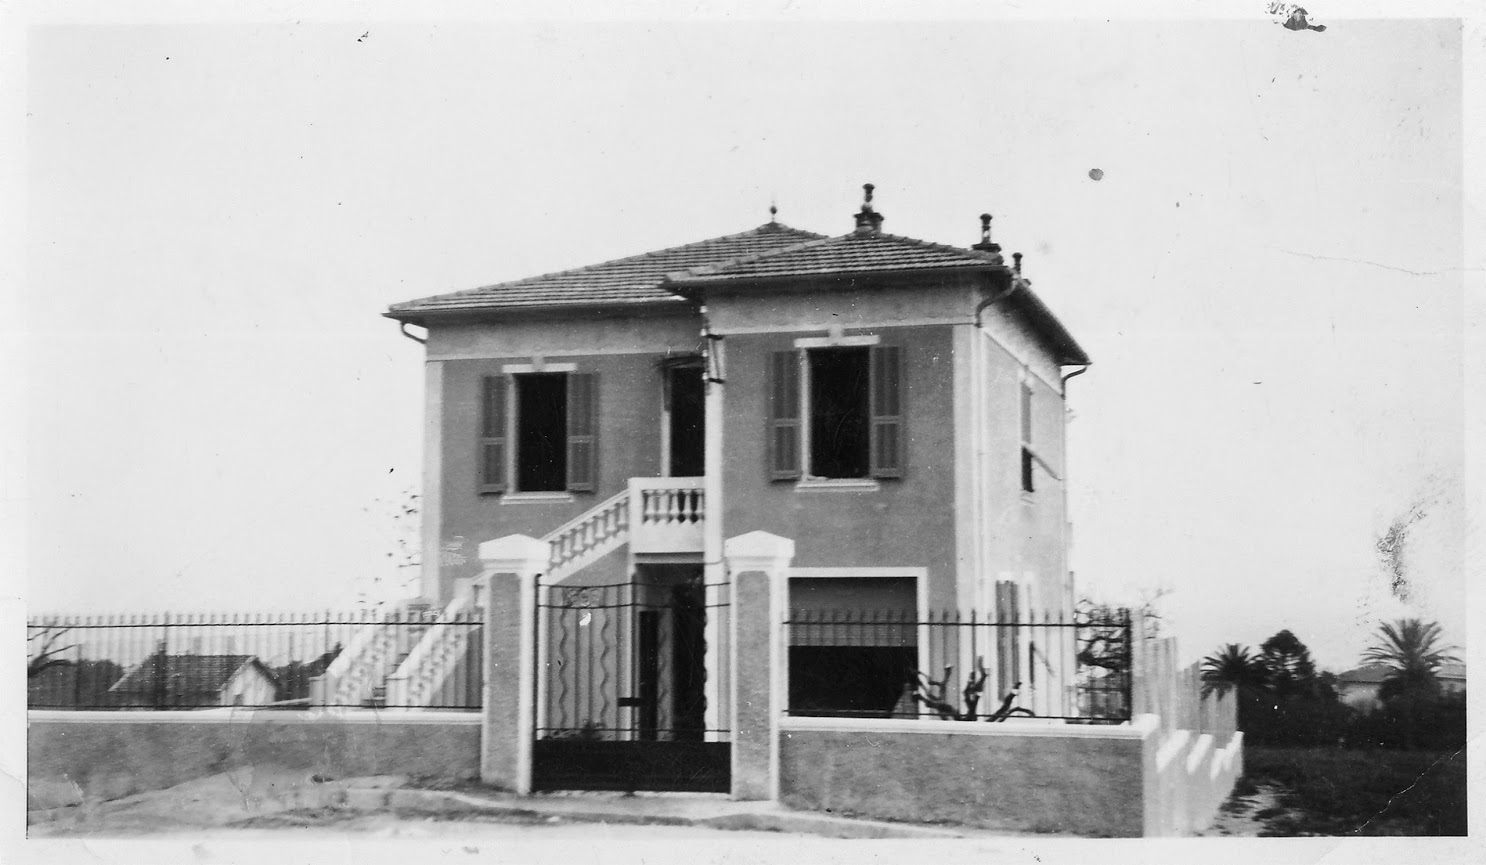 L Croix du Sud, première maison construite dans le lotissement